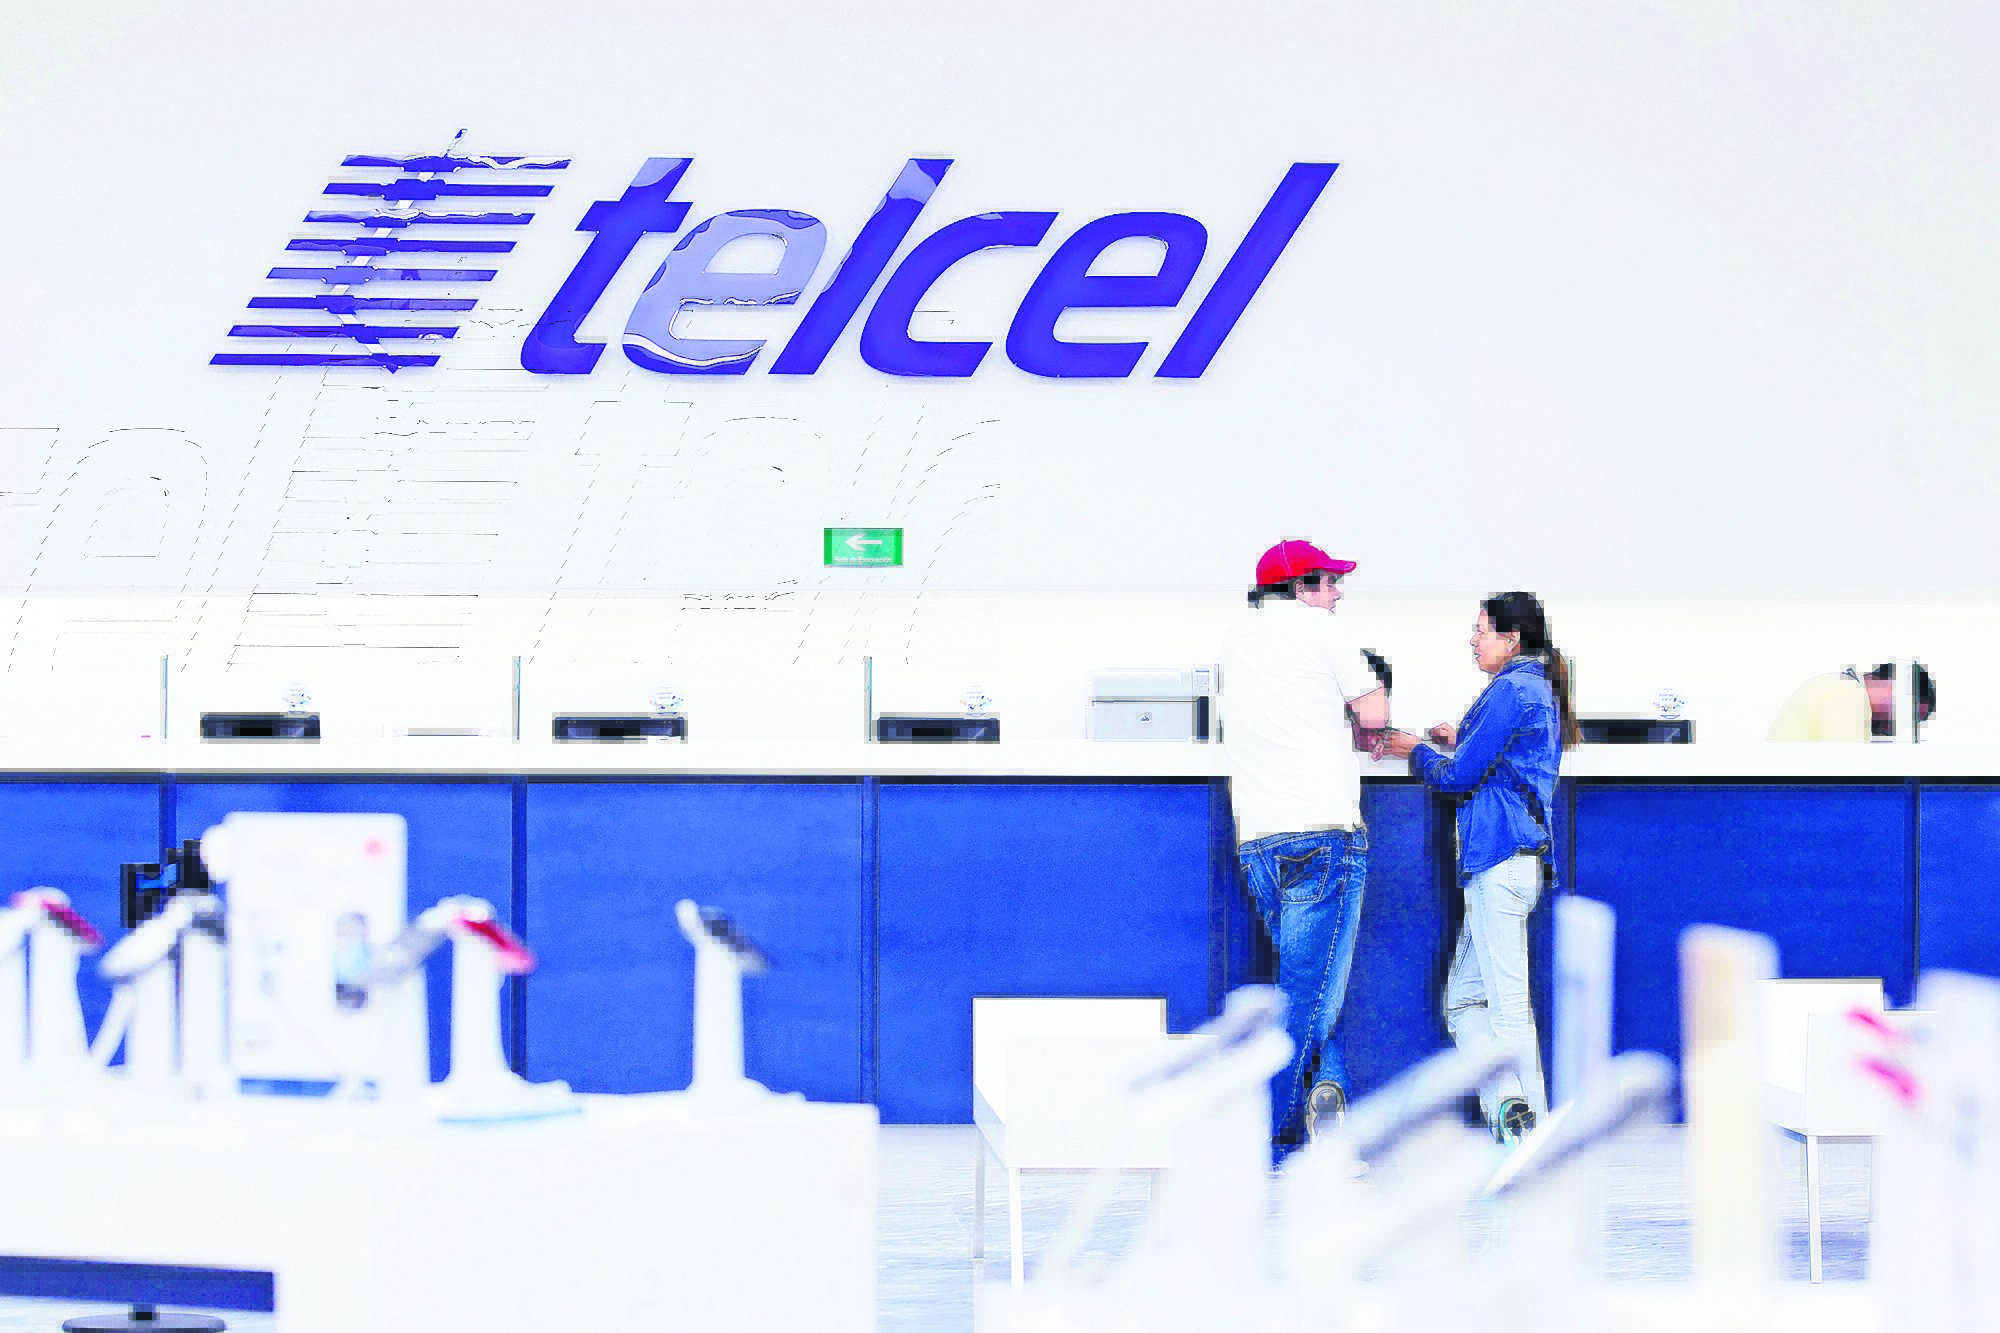 Centros de atención a clientes Telcel